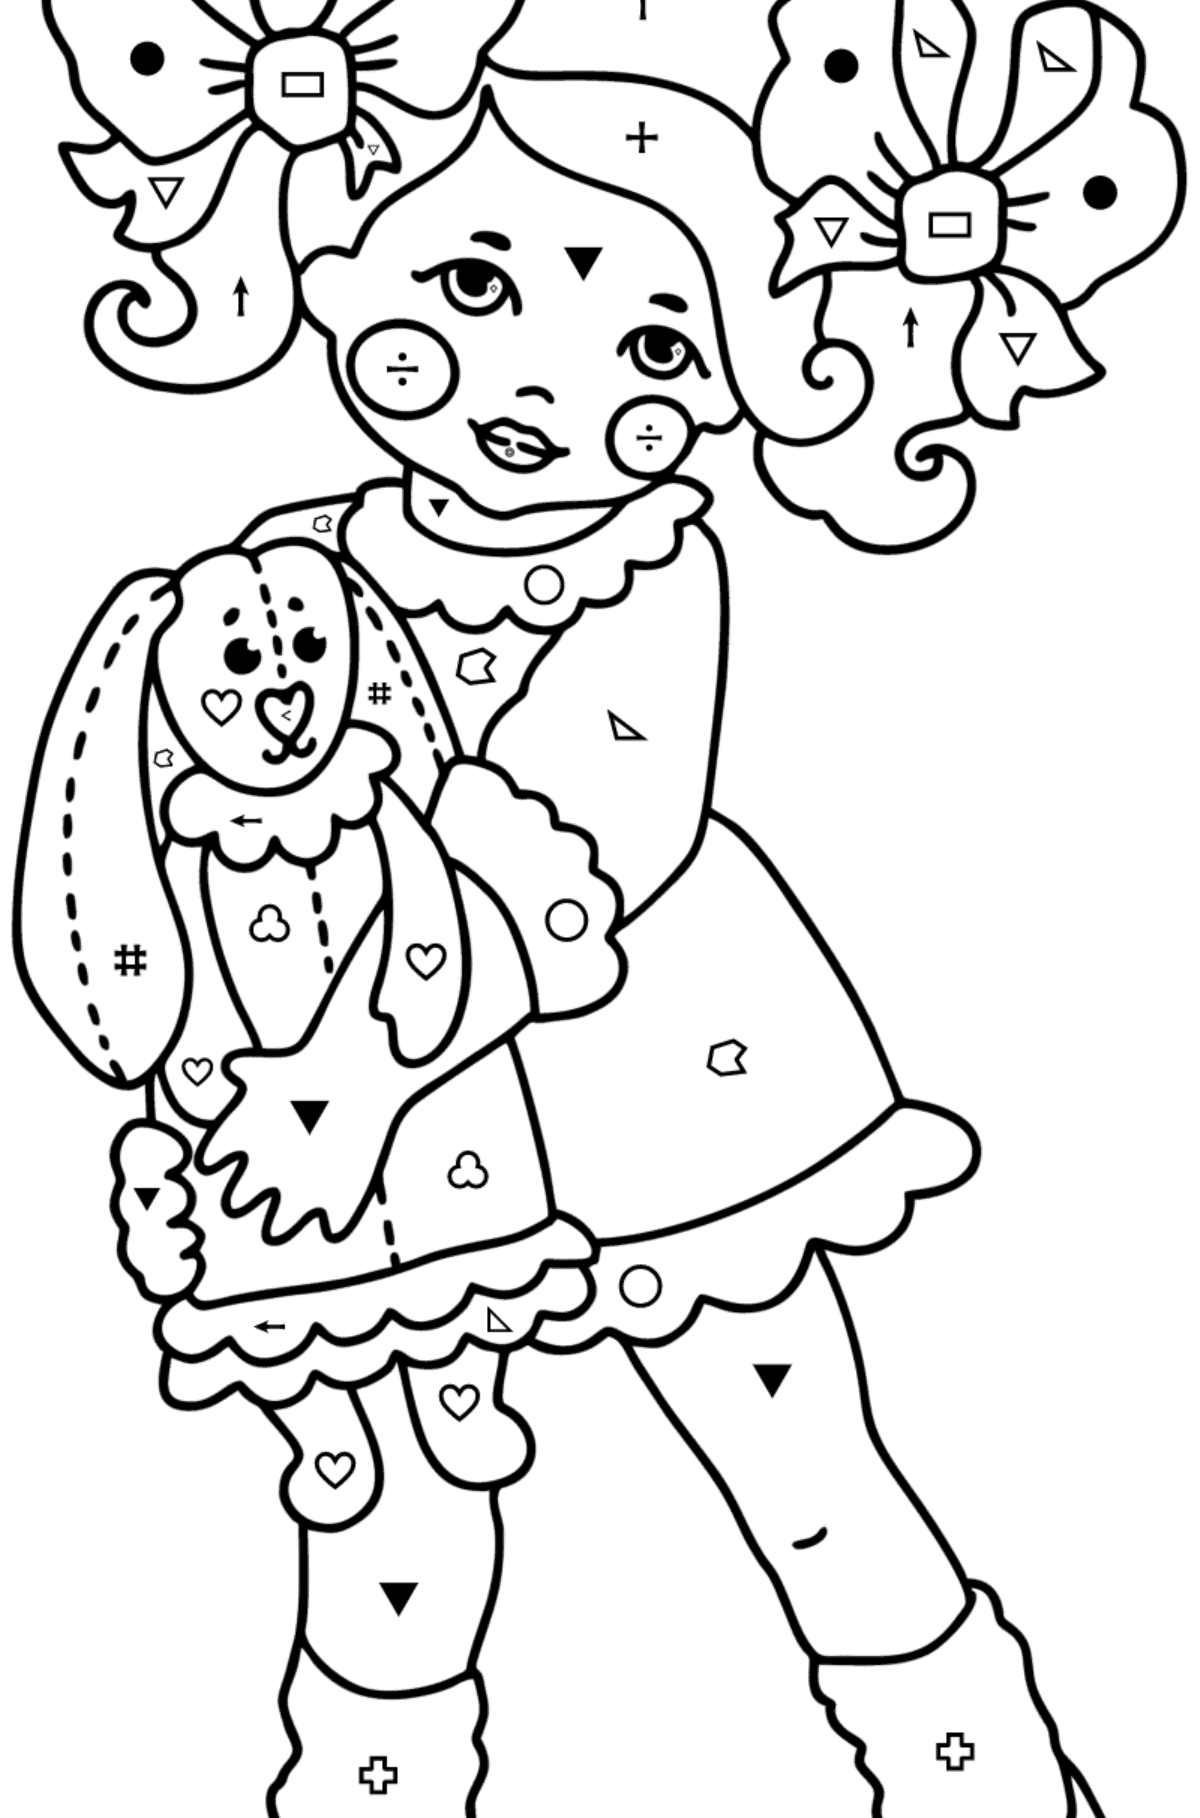 Boyama sayfası Kız ve tavşan - Sembollere ve Geometrik Şekillerle Boyama çocuklar için